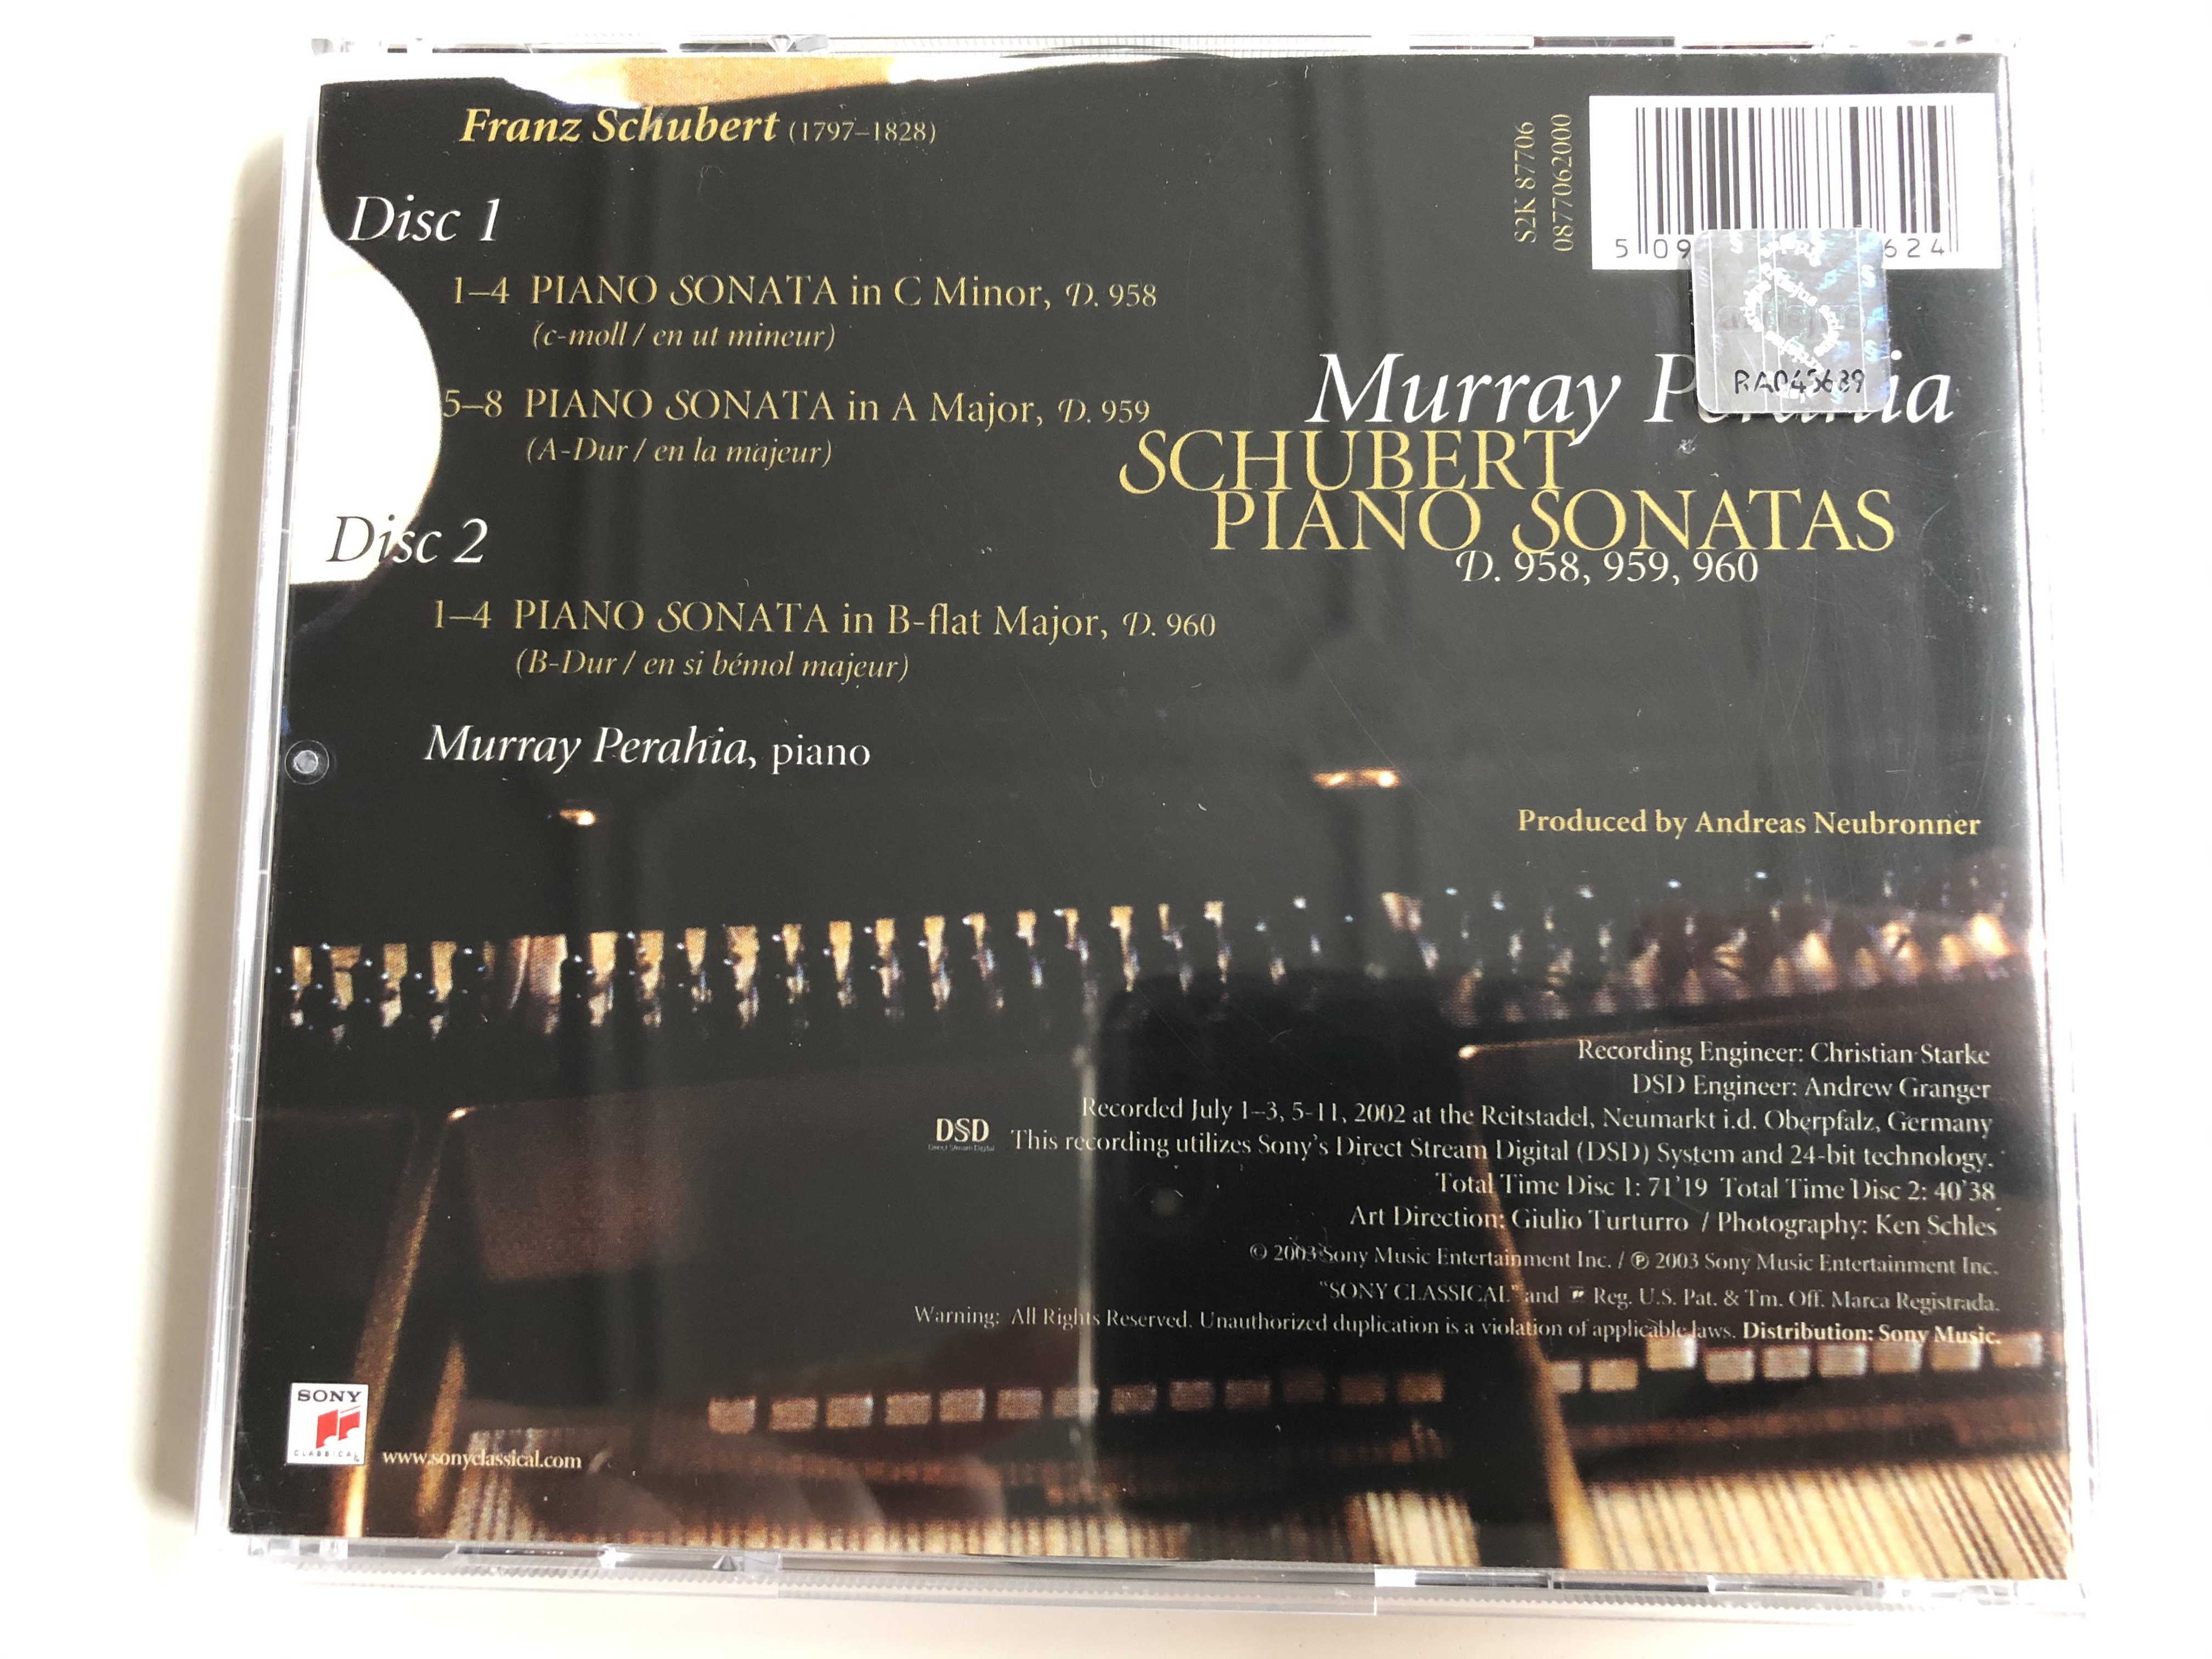 murray-perahia-schubert-piano-sonatas-d.958-959-960-sony-classical-2x-audio-cd-2003-s2k-87706-4-.jpg